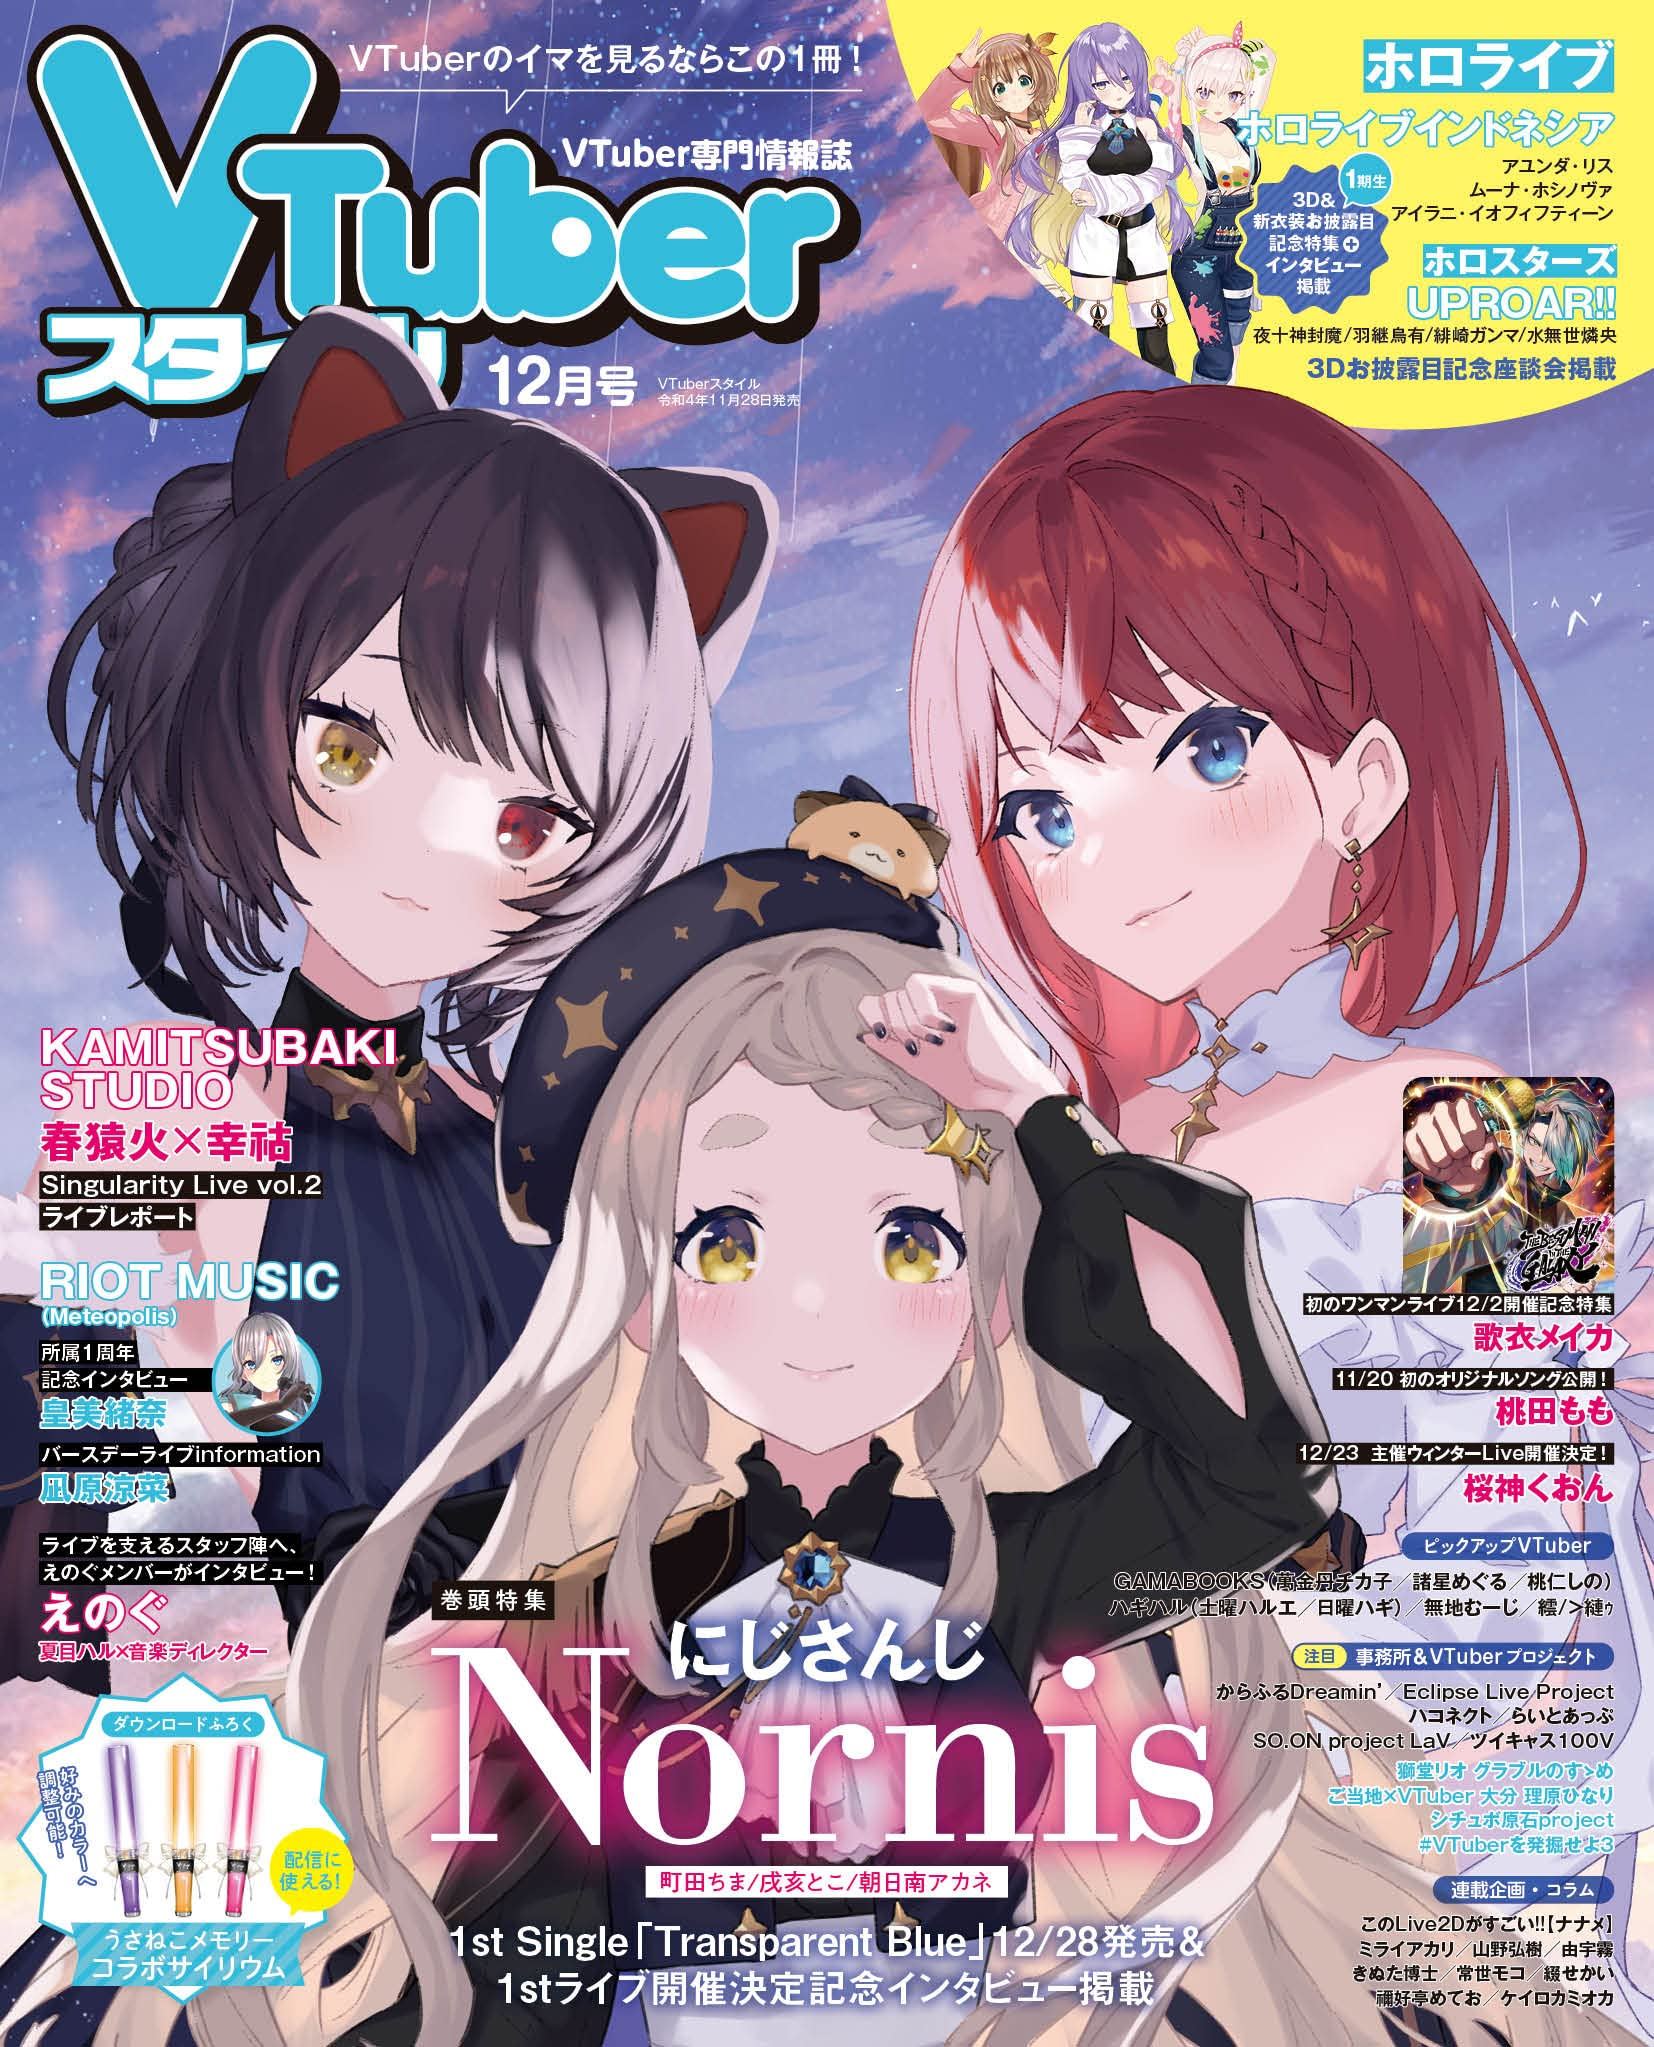 VTuber Style December 2022 Issue Appli-style